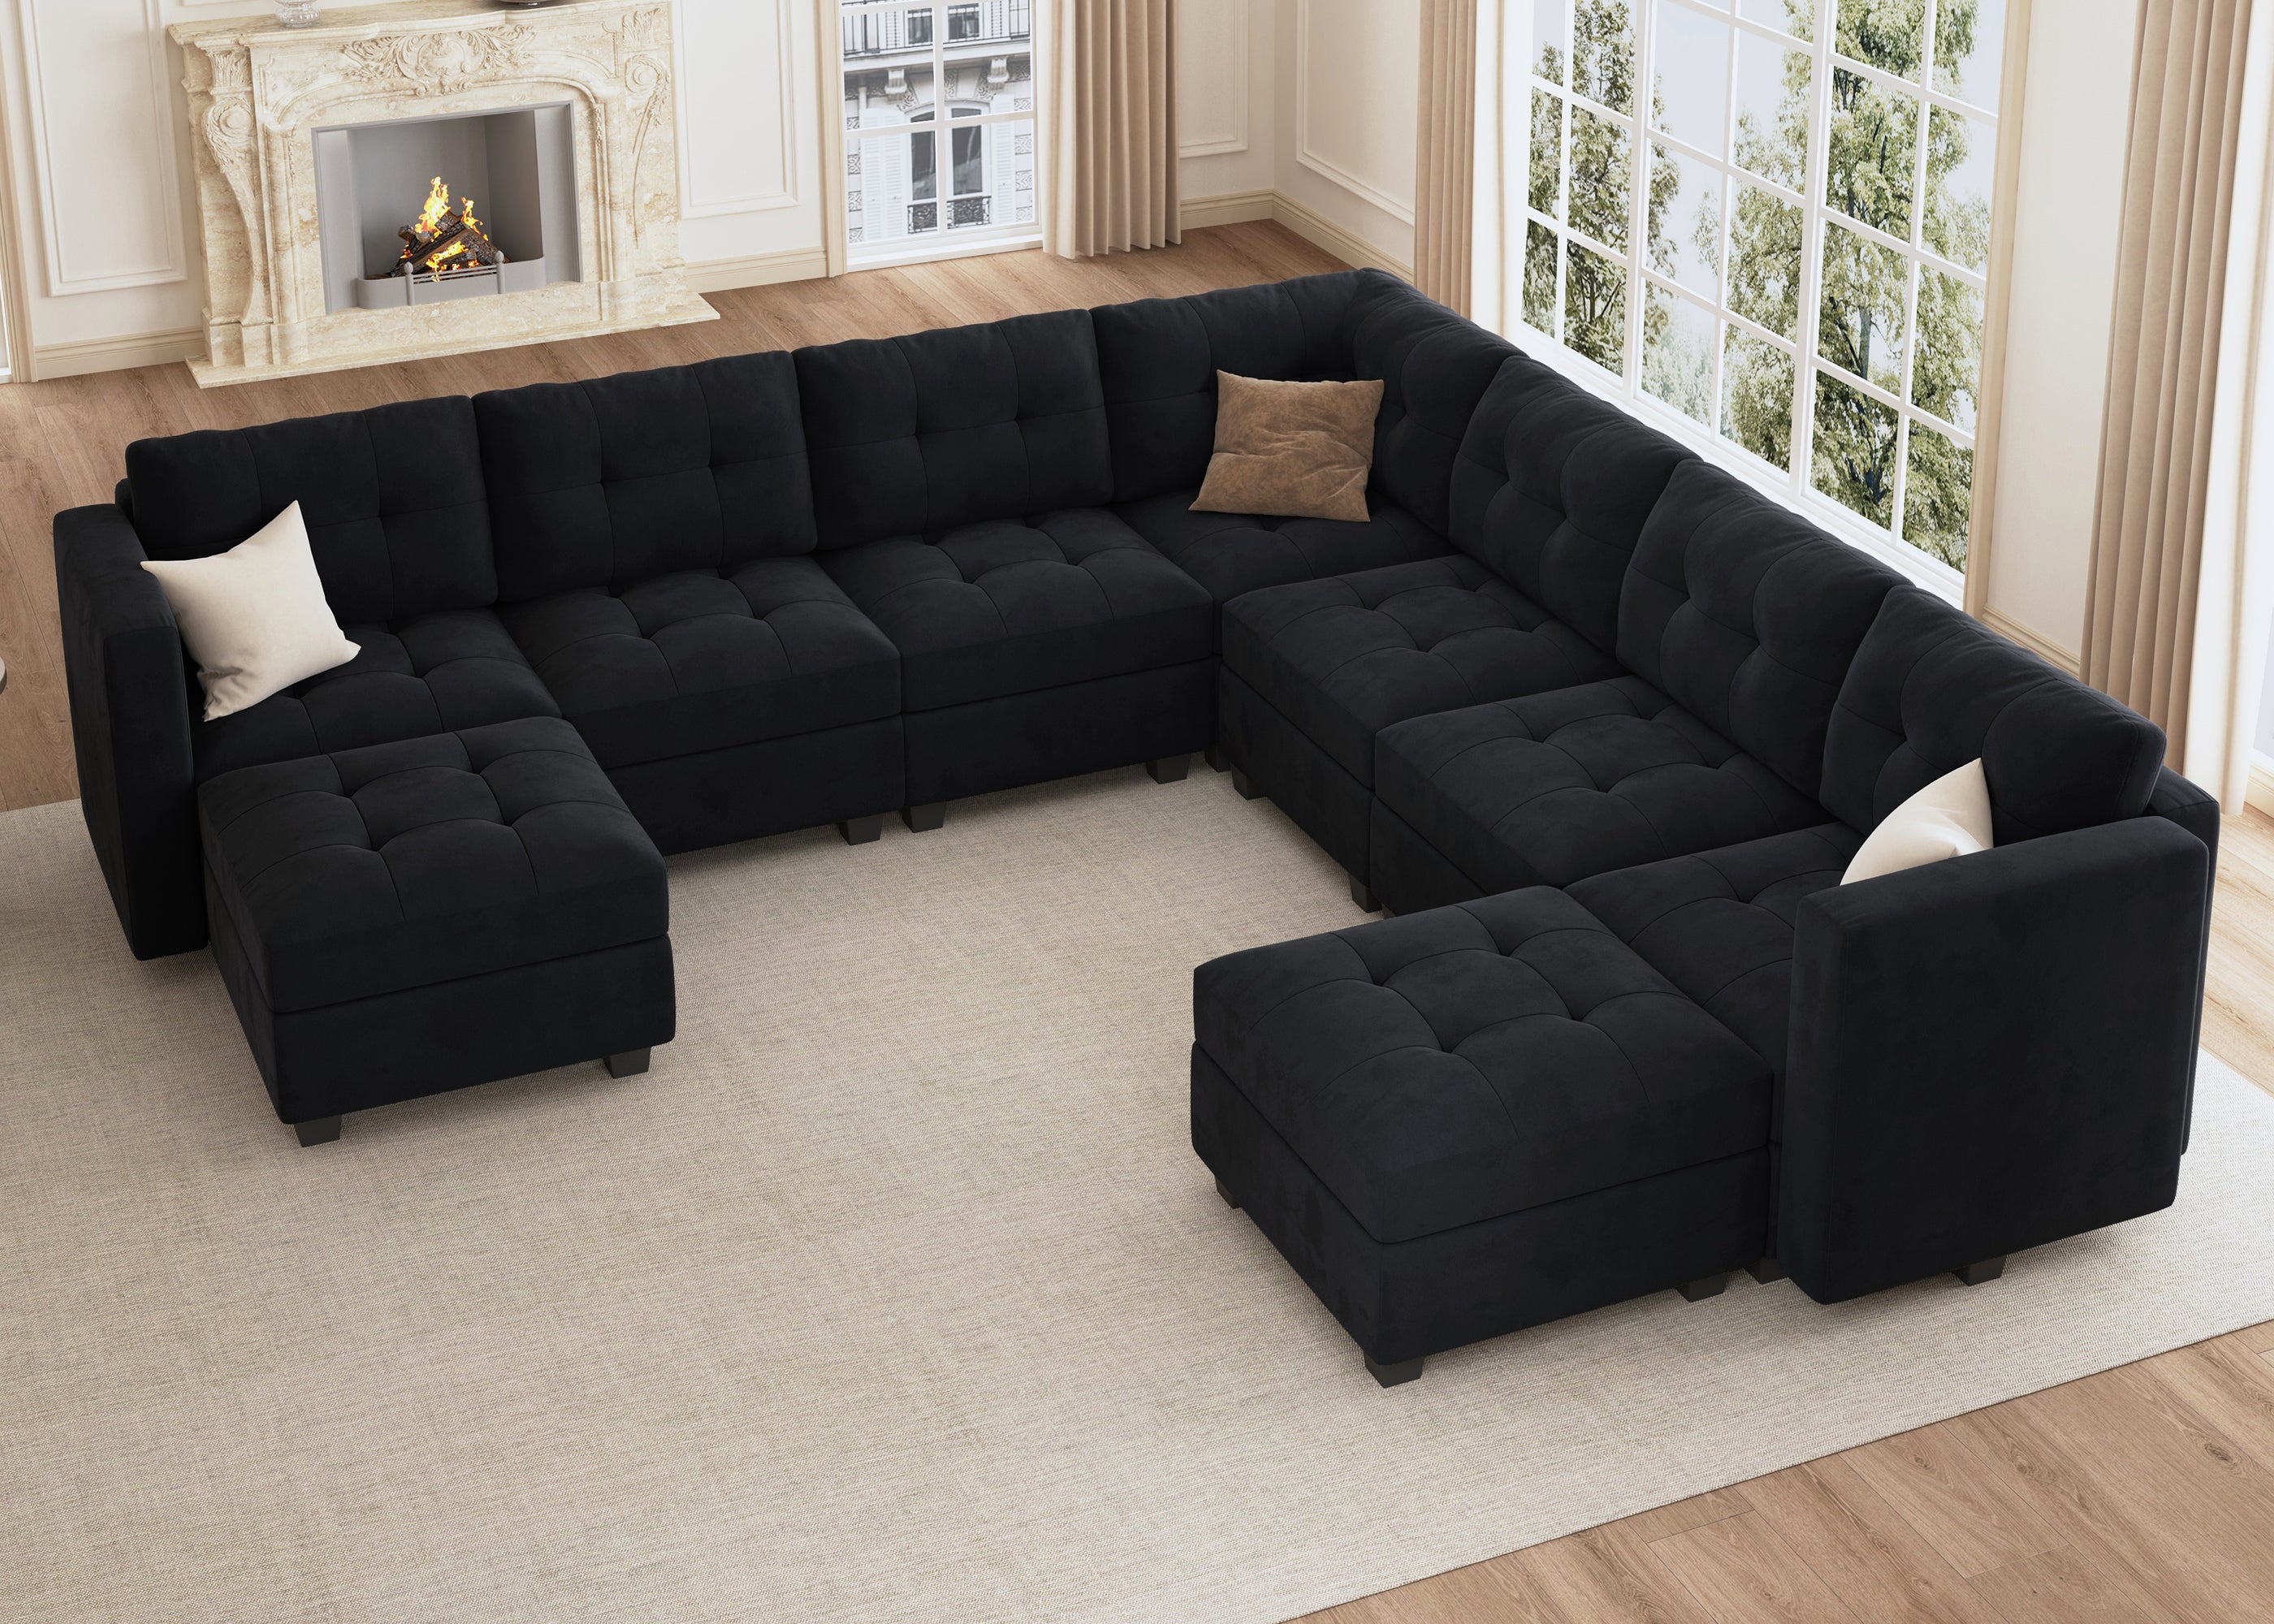 Buy Fujairah Sectional U Shape Modular Sofa @Upto 70% Off at